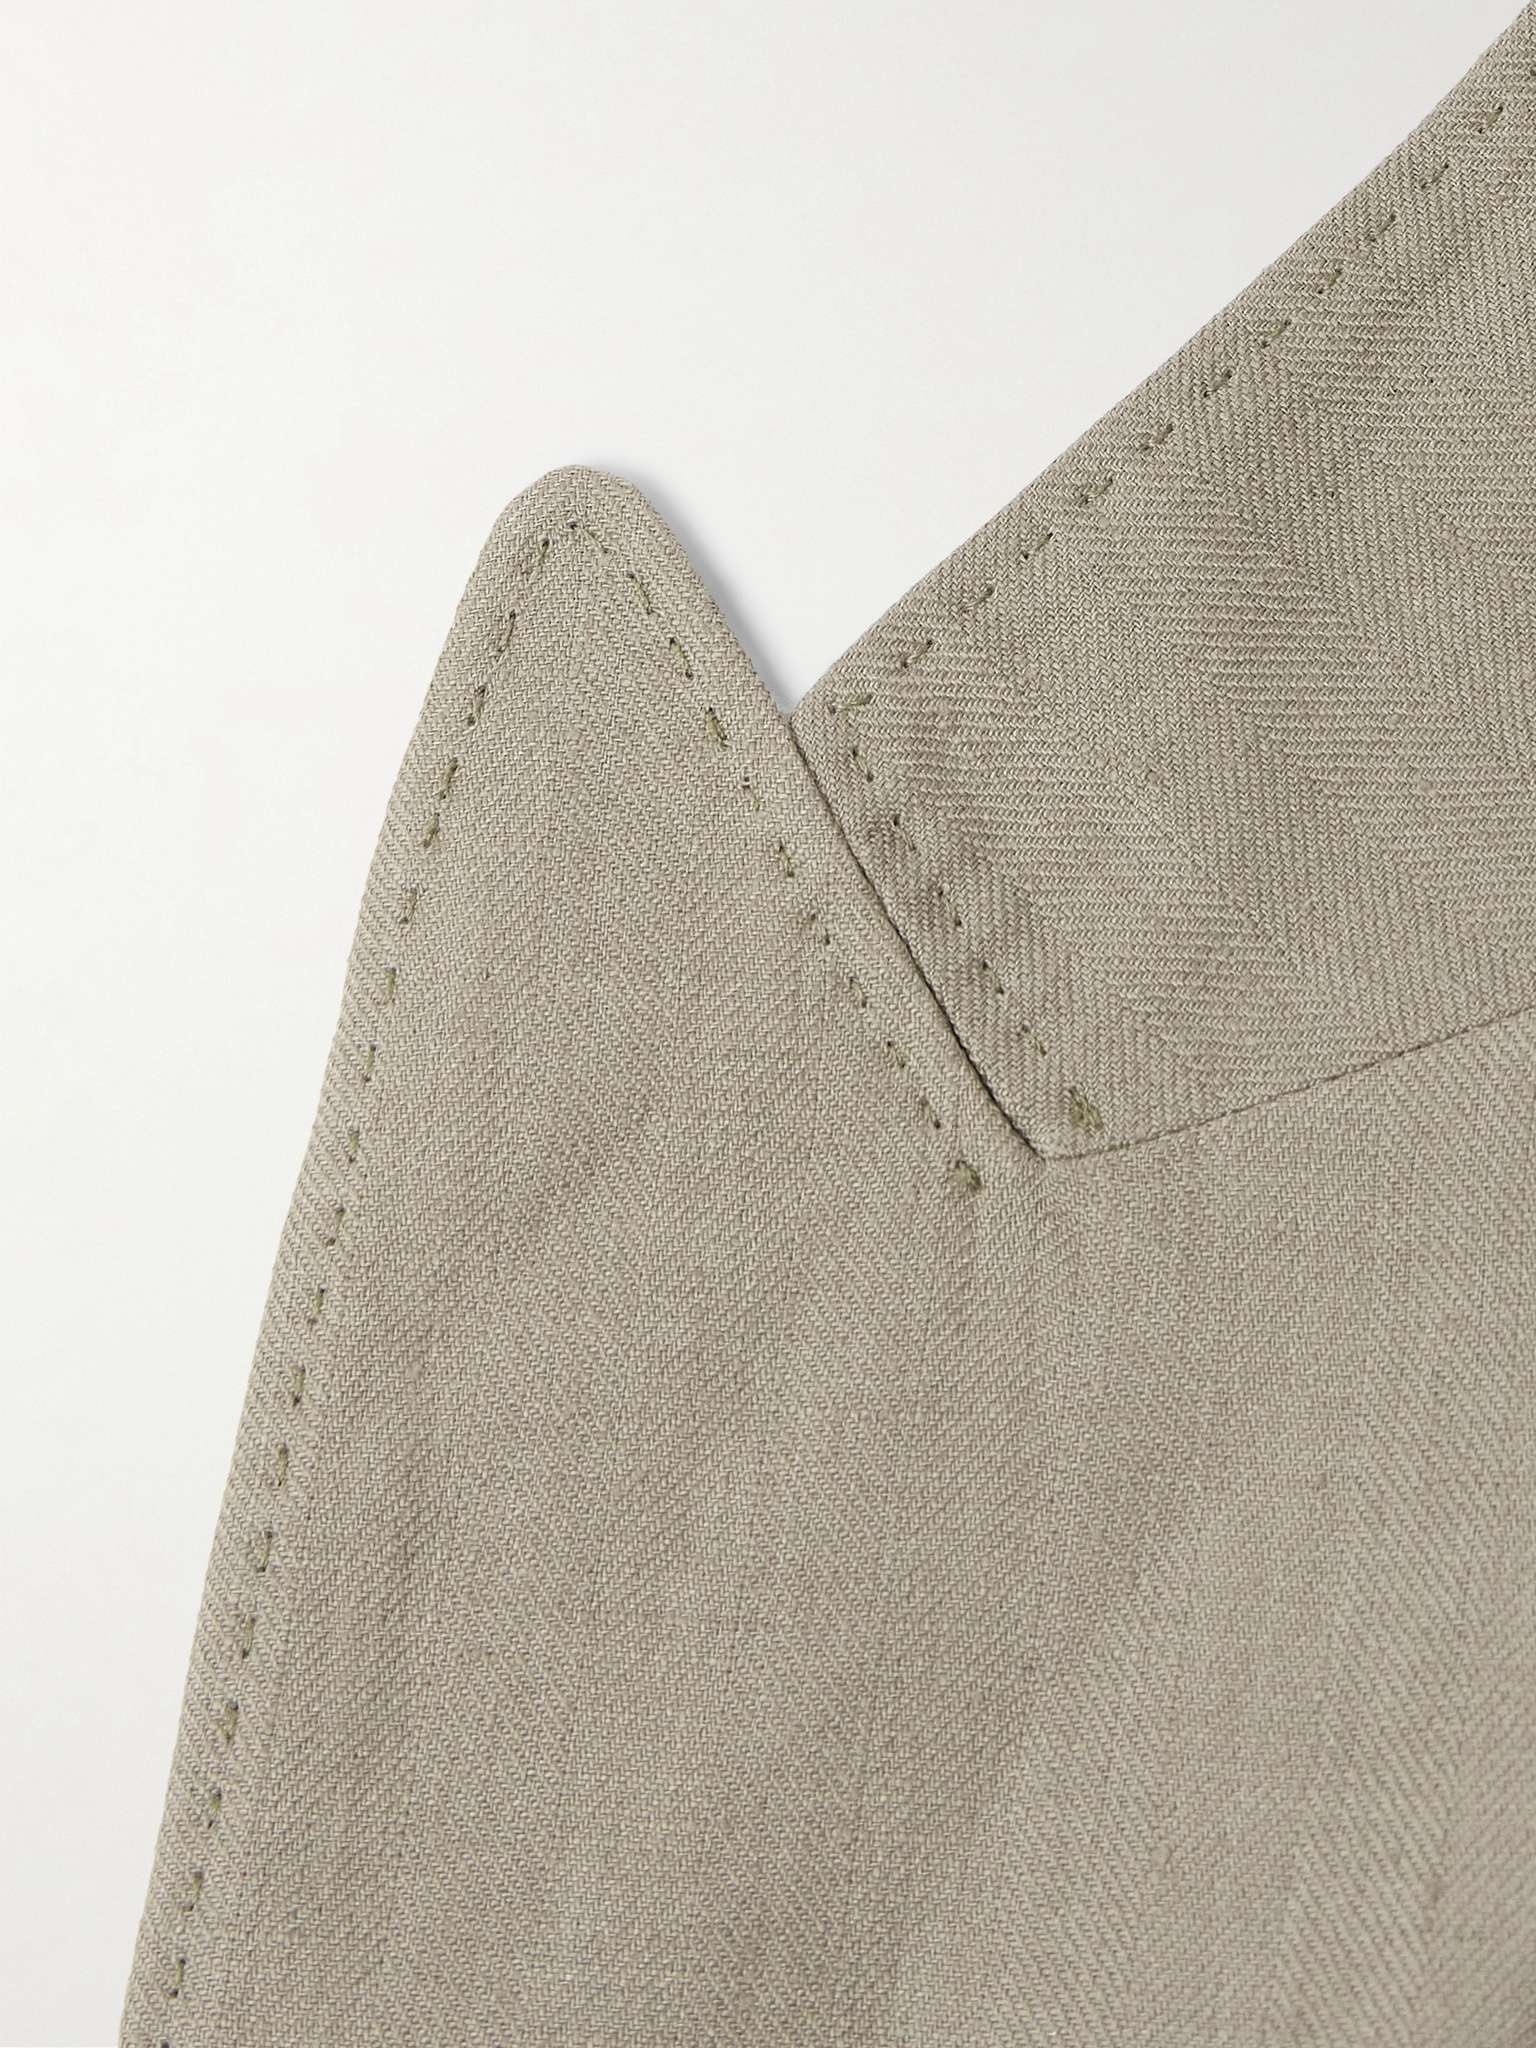 Herringbone Linen Suit - 3